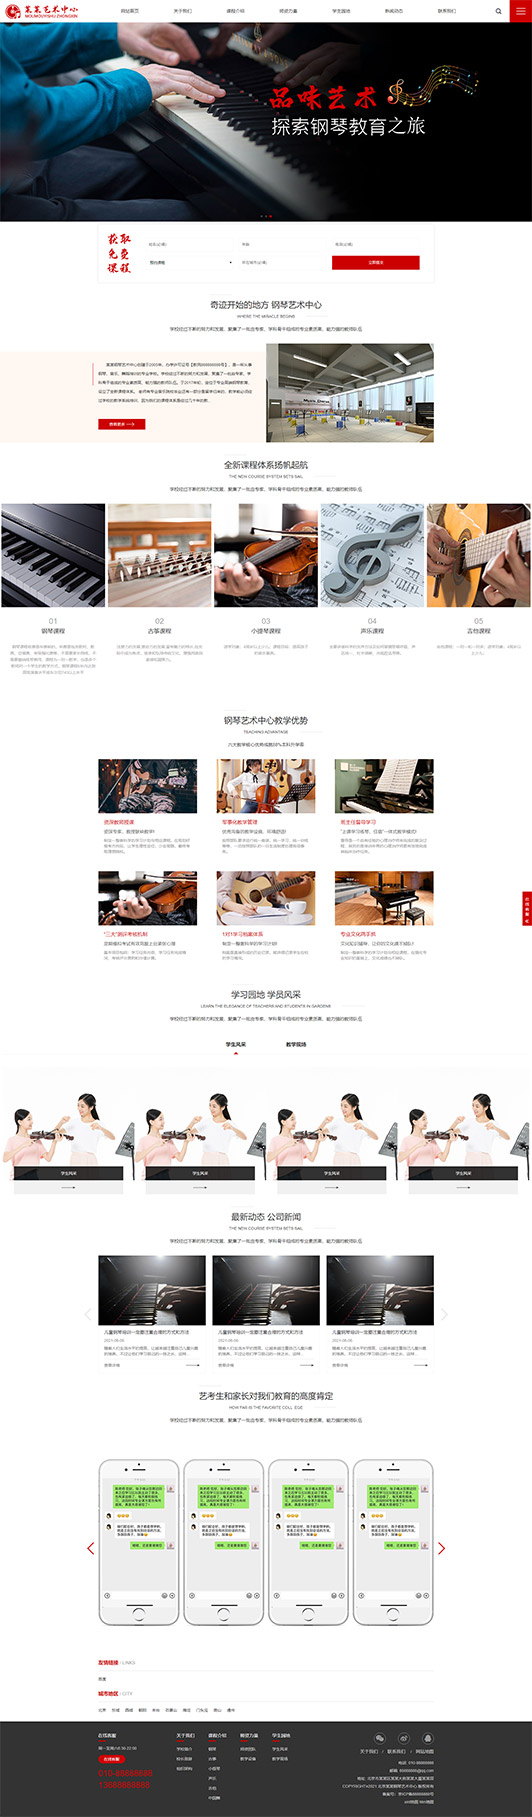 河池钢琴艺术培训公司响应式企业网站